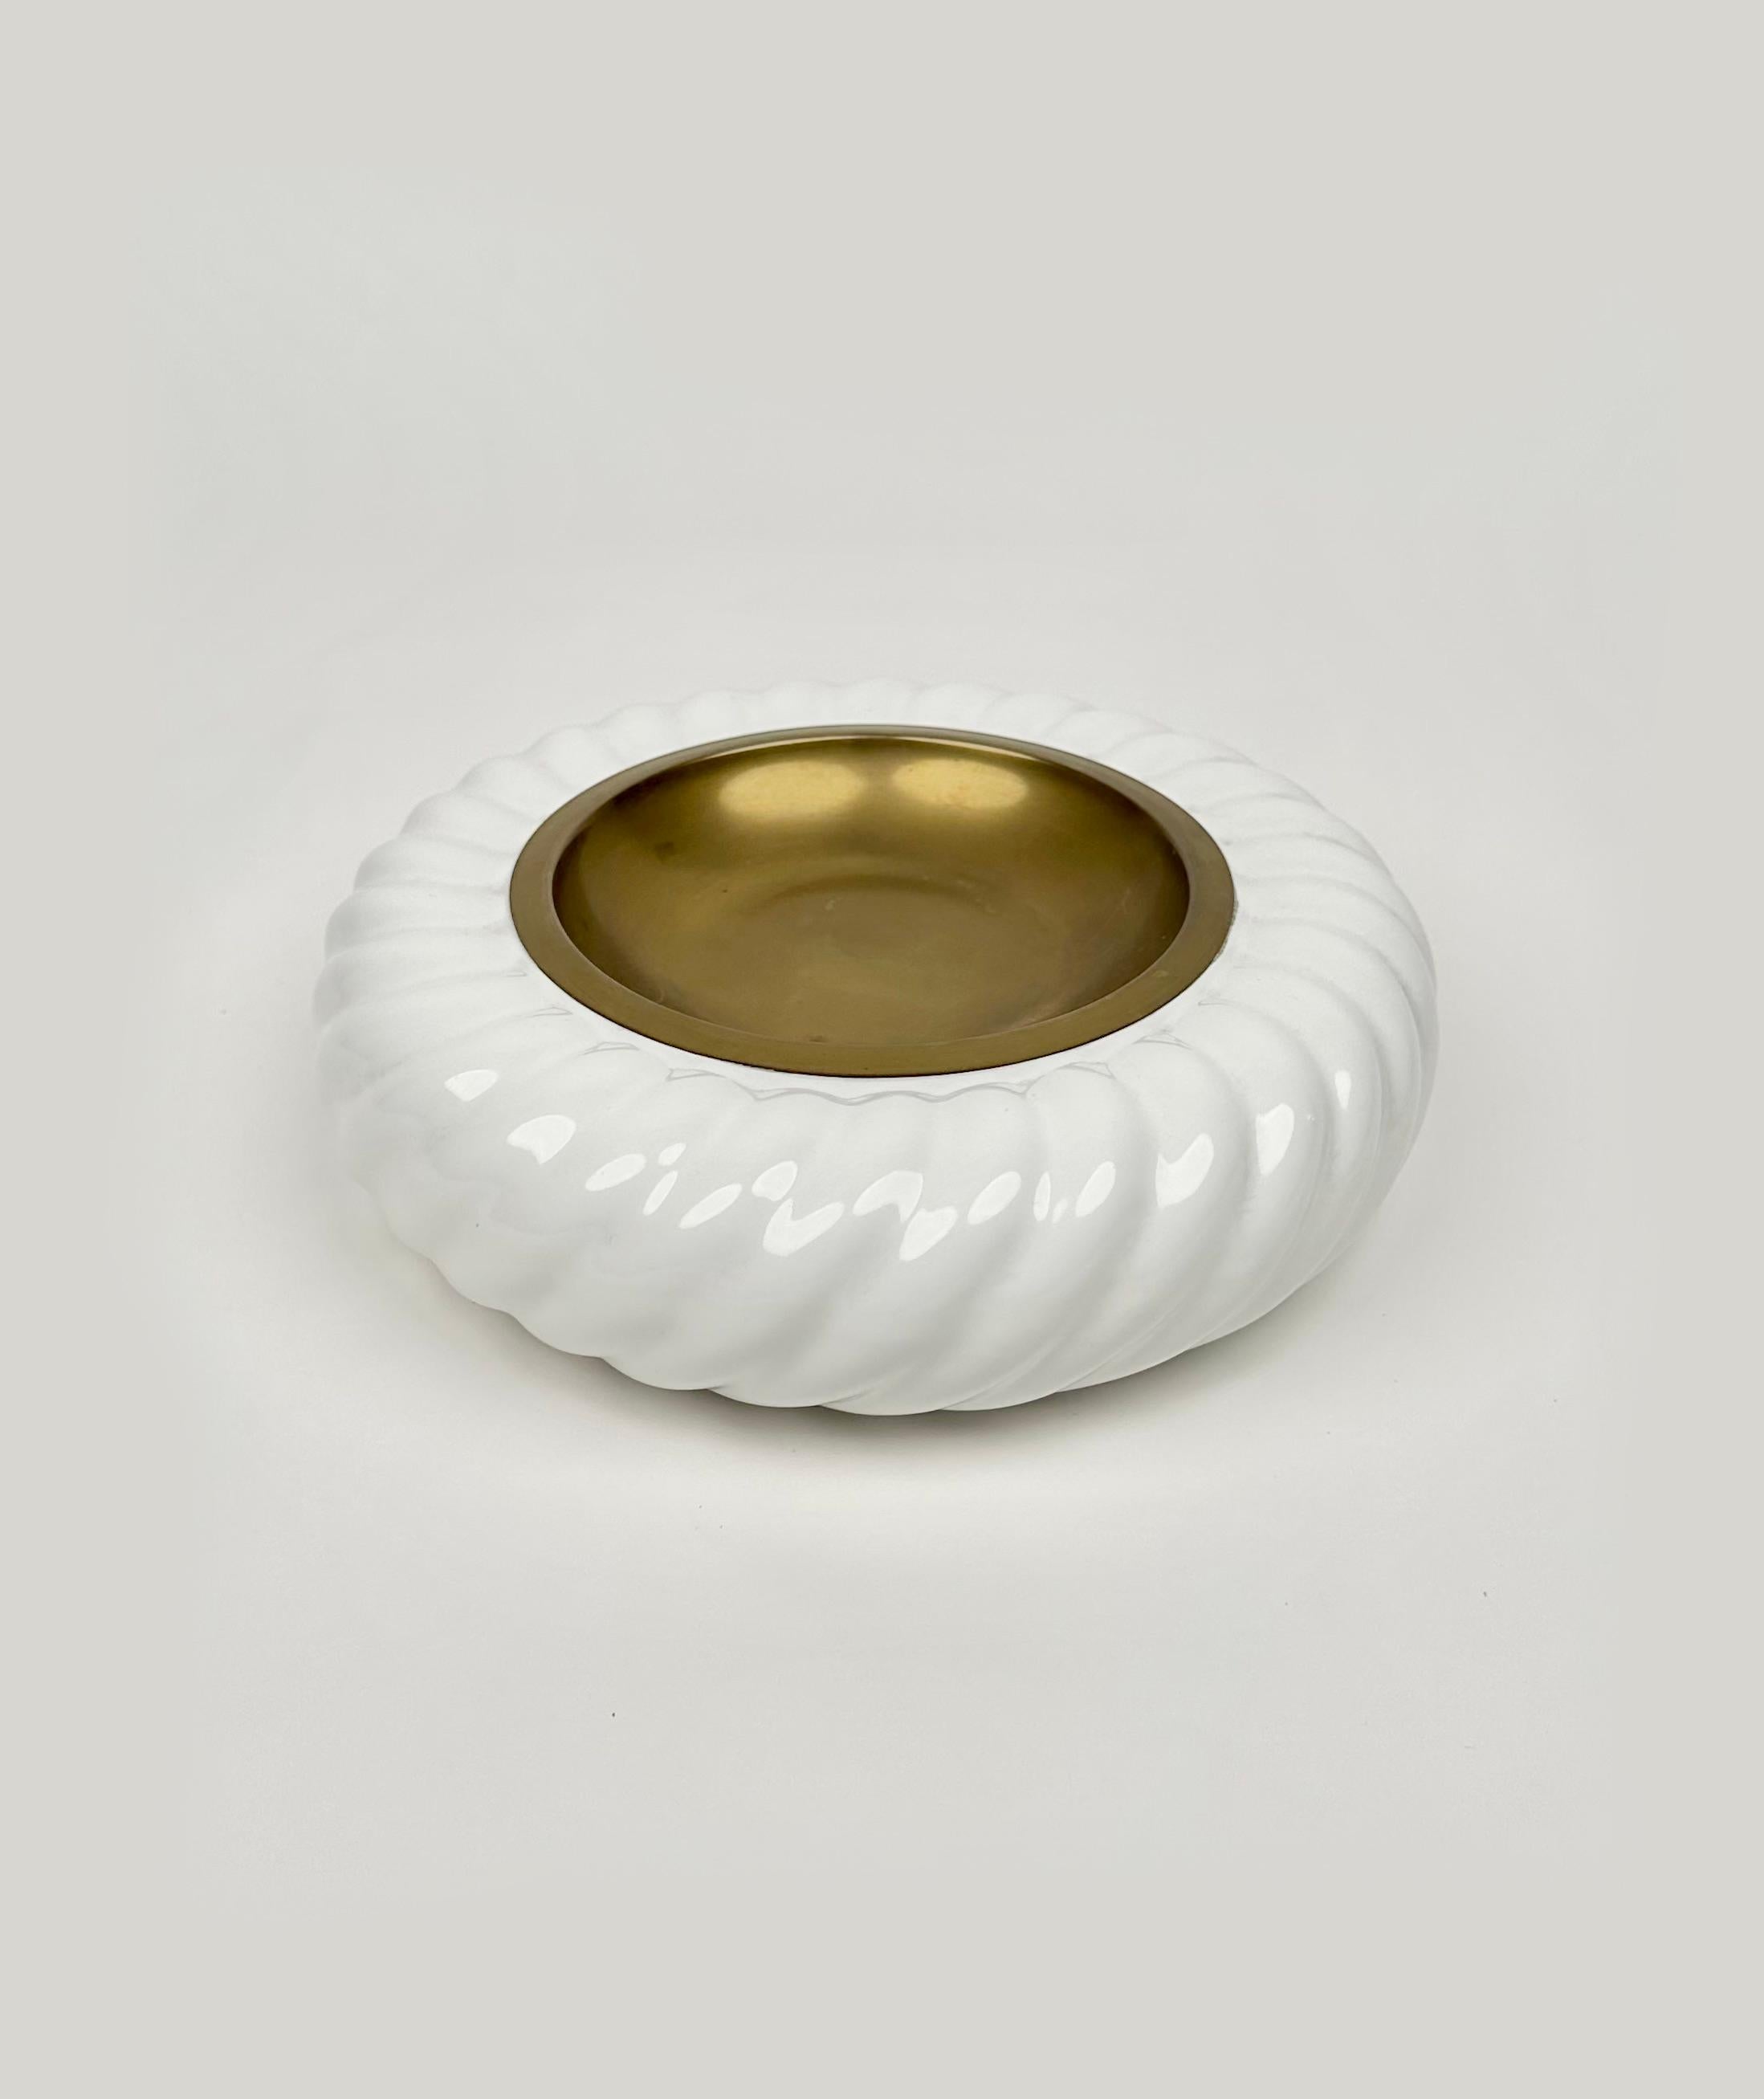 Wunderschöner runder Aschenbecher oder Videopoche aus weißer Keramik und Messing von dem italienischen Designer Tommaso Barbi für B ceramiche.   

Hergestellt in Italien in den 1970er Jahren.   

Tommaso Barbi signiert sichtbar auf der Unterseite,